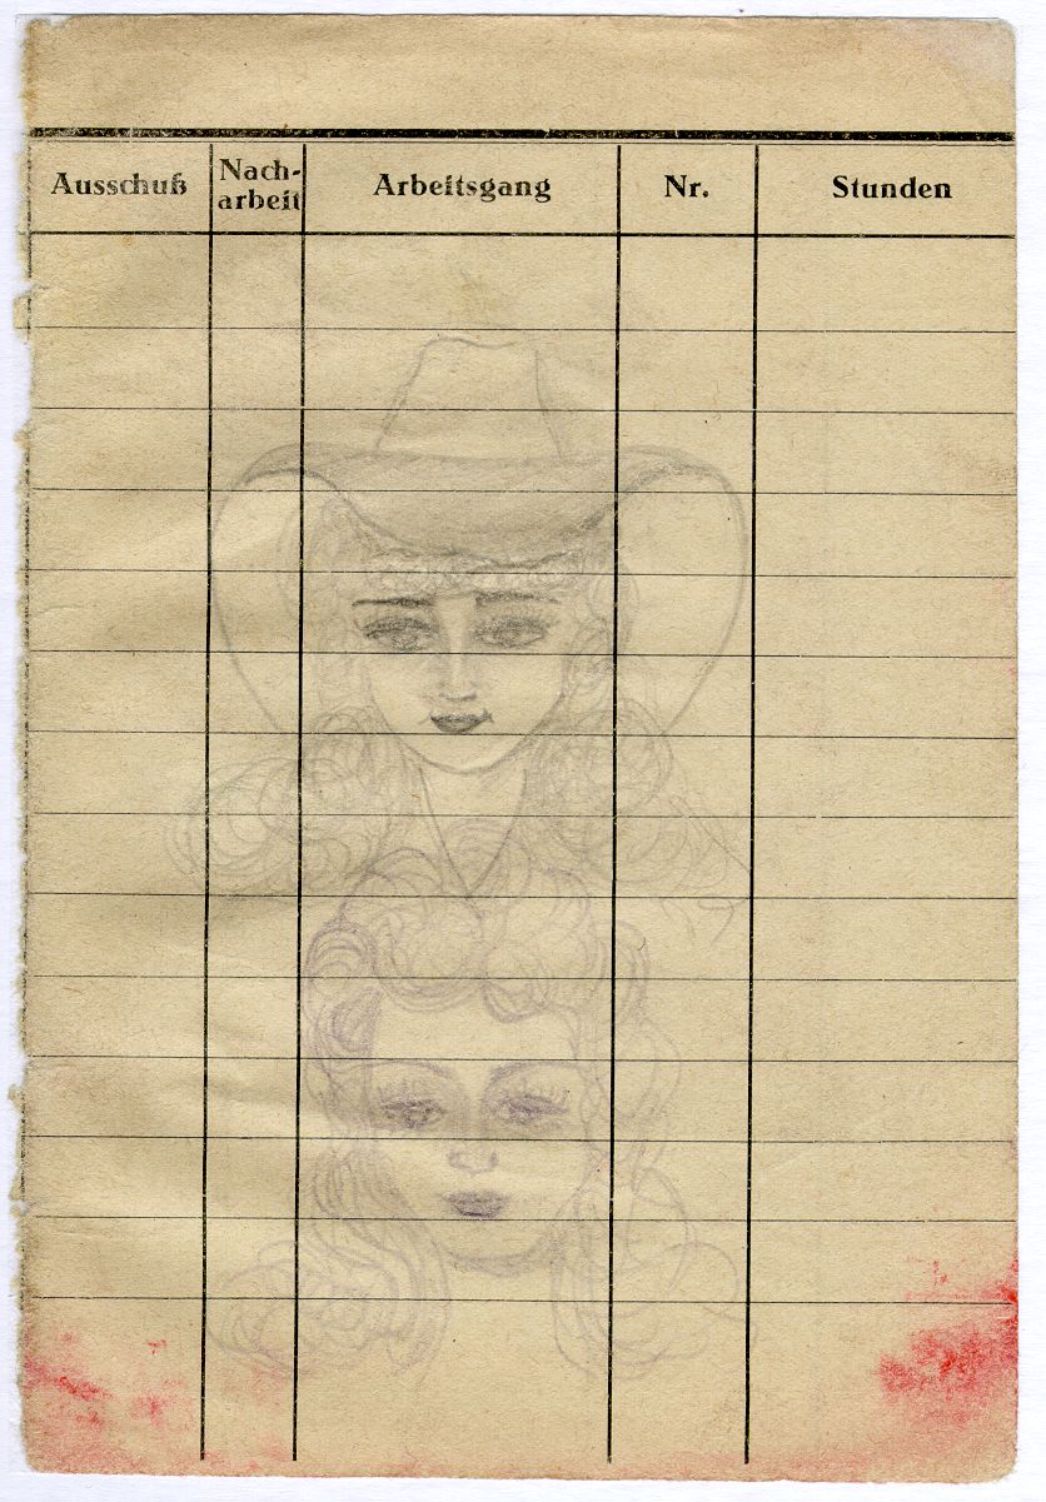 Die Zeichnungen zeigt zwei Mädchengesichter, Die geschminkten und gelockten Frauen Tragen prächtige Hüte. Die Zeichnung wurde auf einem Arbeitserfassungsbogen erstellt.